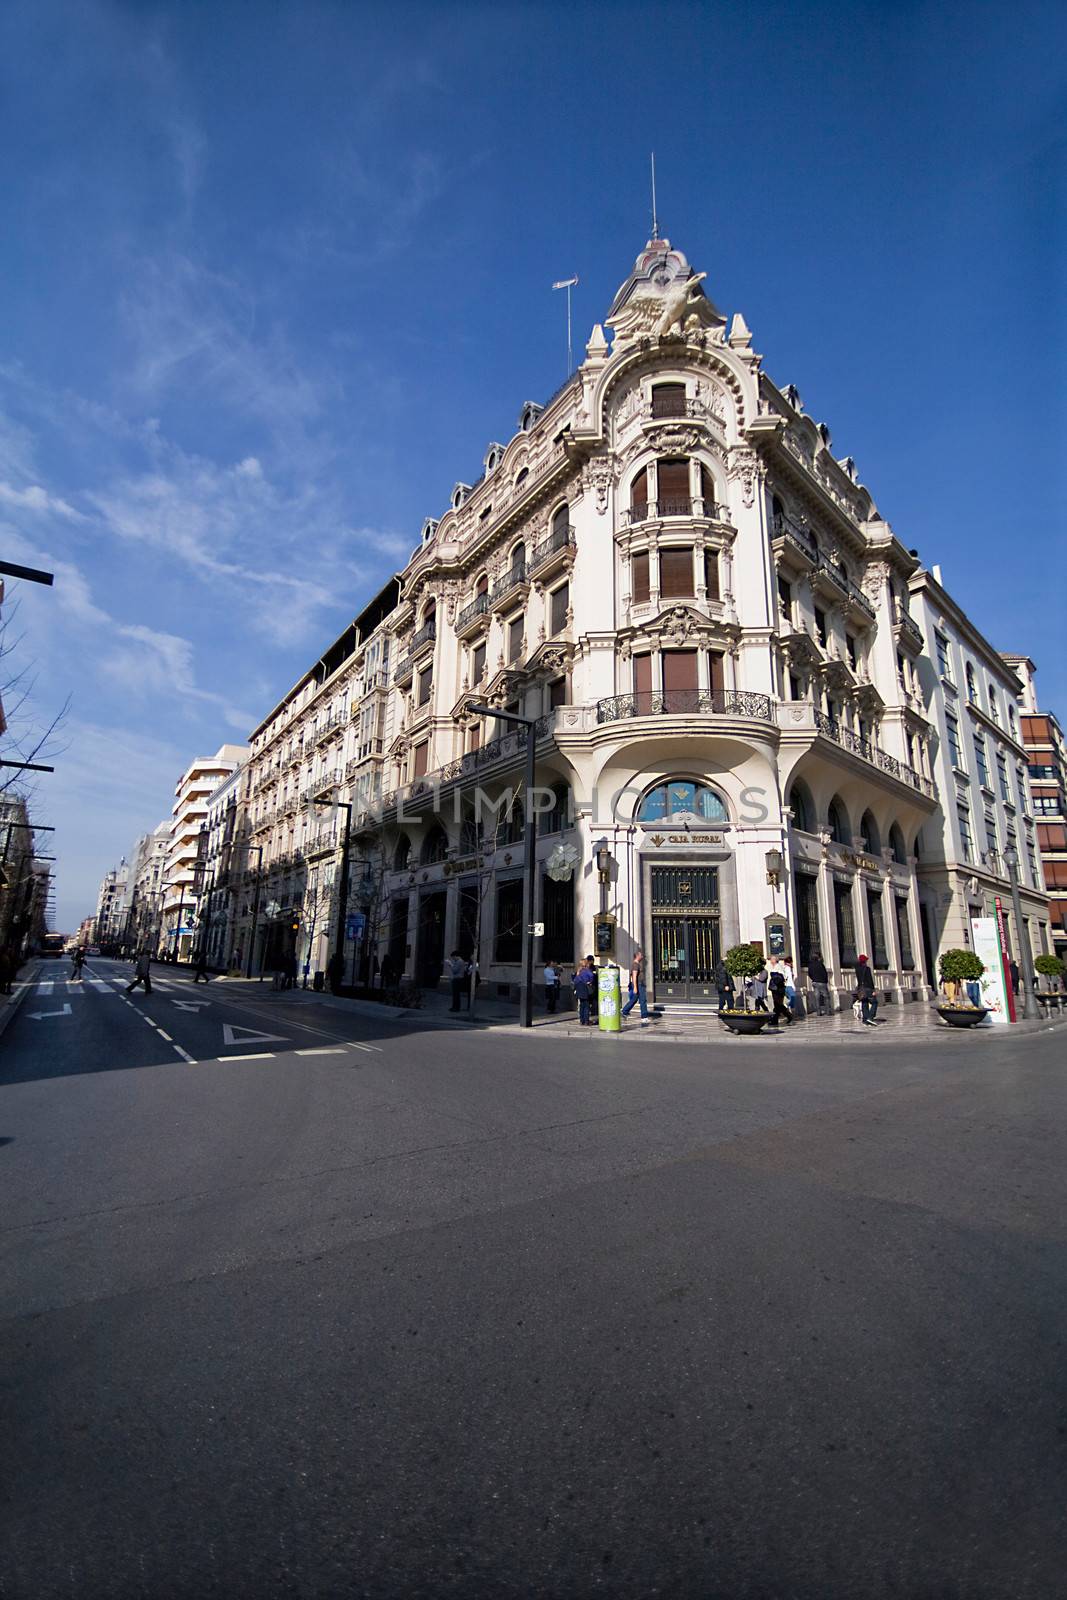 Bank building, Granada, Spain by digicomphoto